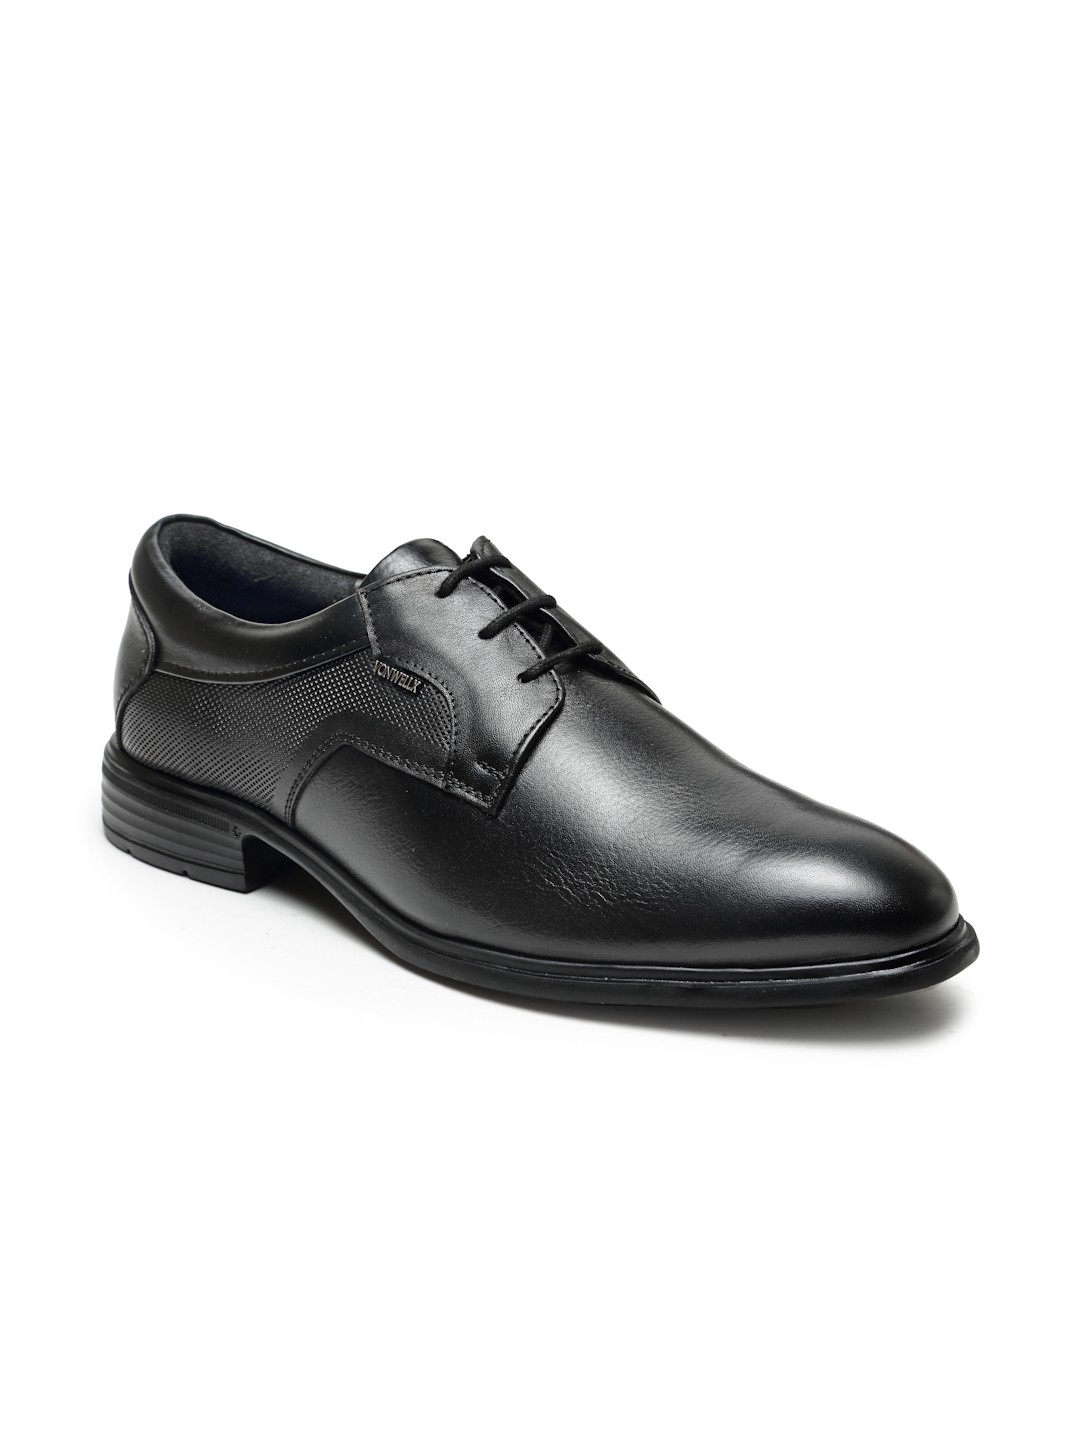 Buy Von Wellx Germany Comfort Men's Black Formal Shoes Adler Online in Bihar